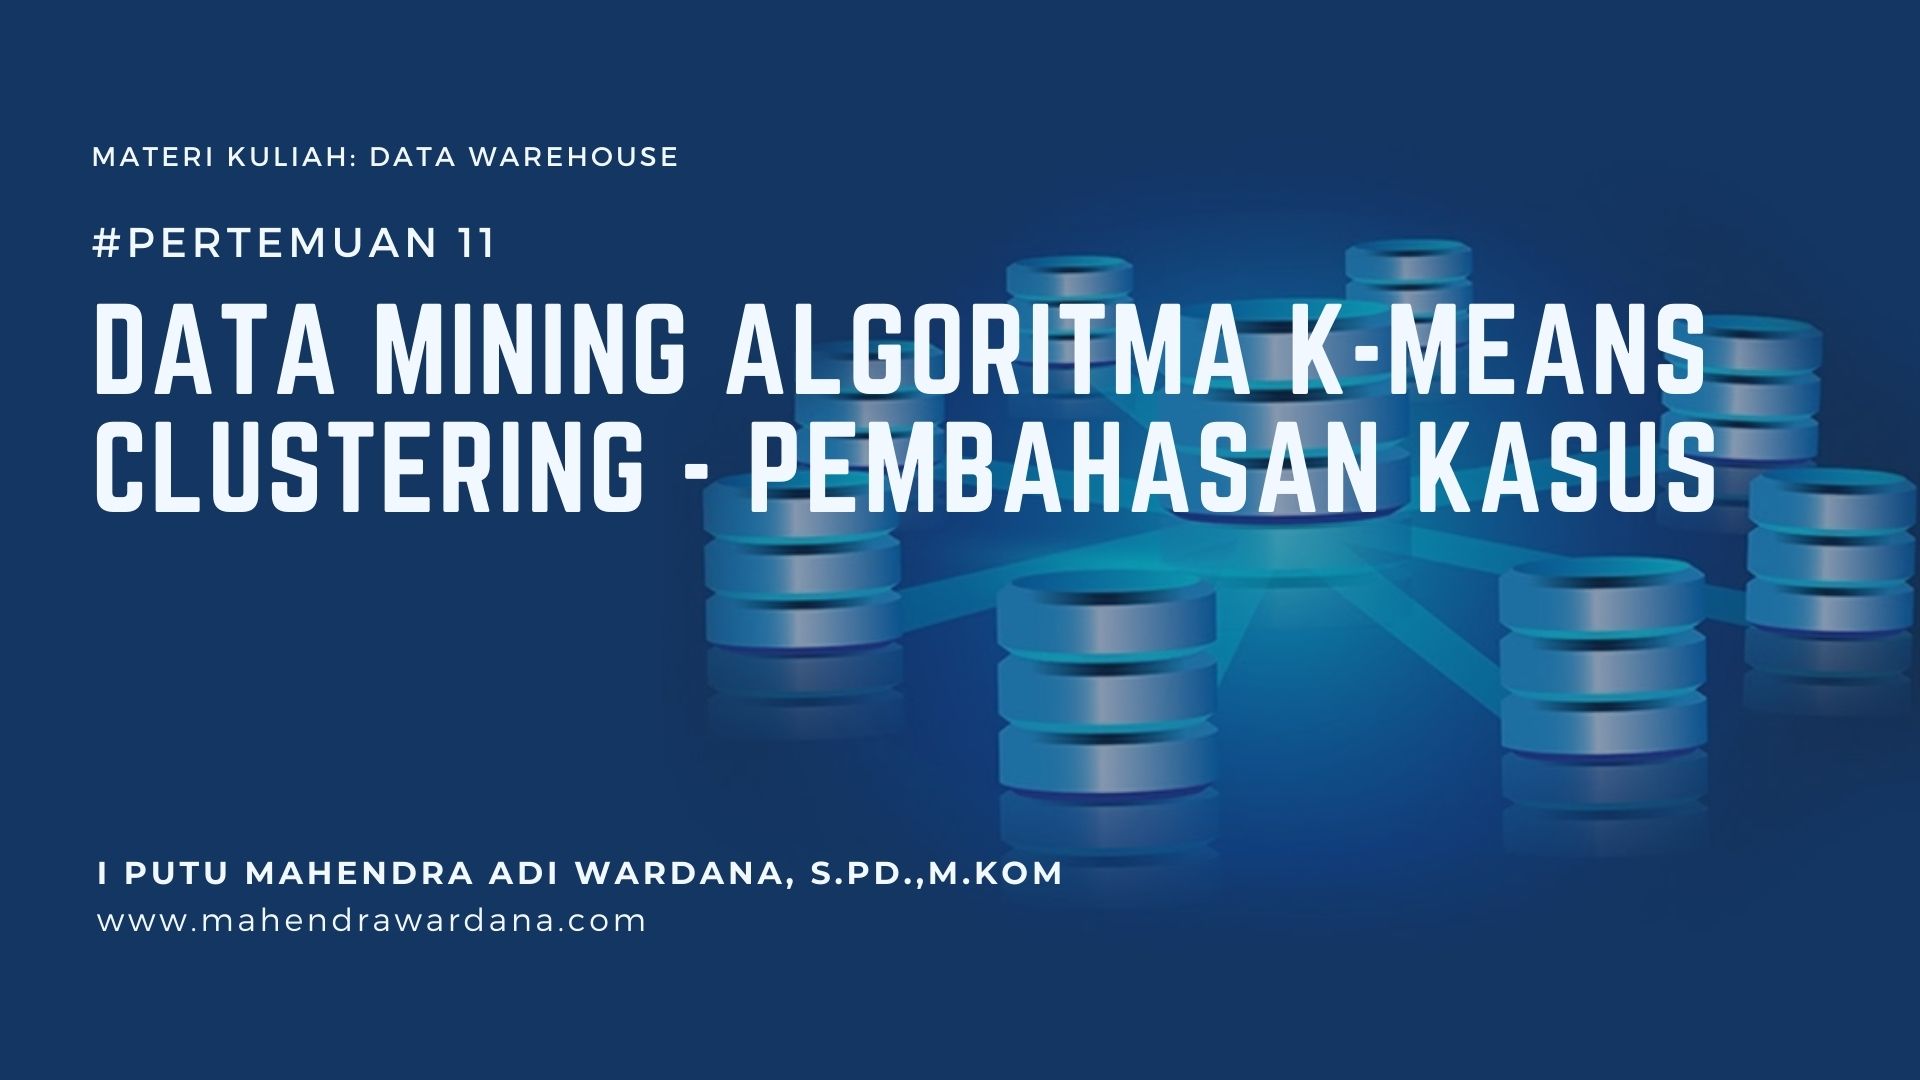 Pertemuan 11 - Data Mining Algoritma K-Means Clustering - Pembahasan Kasus